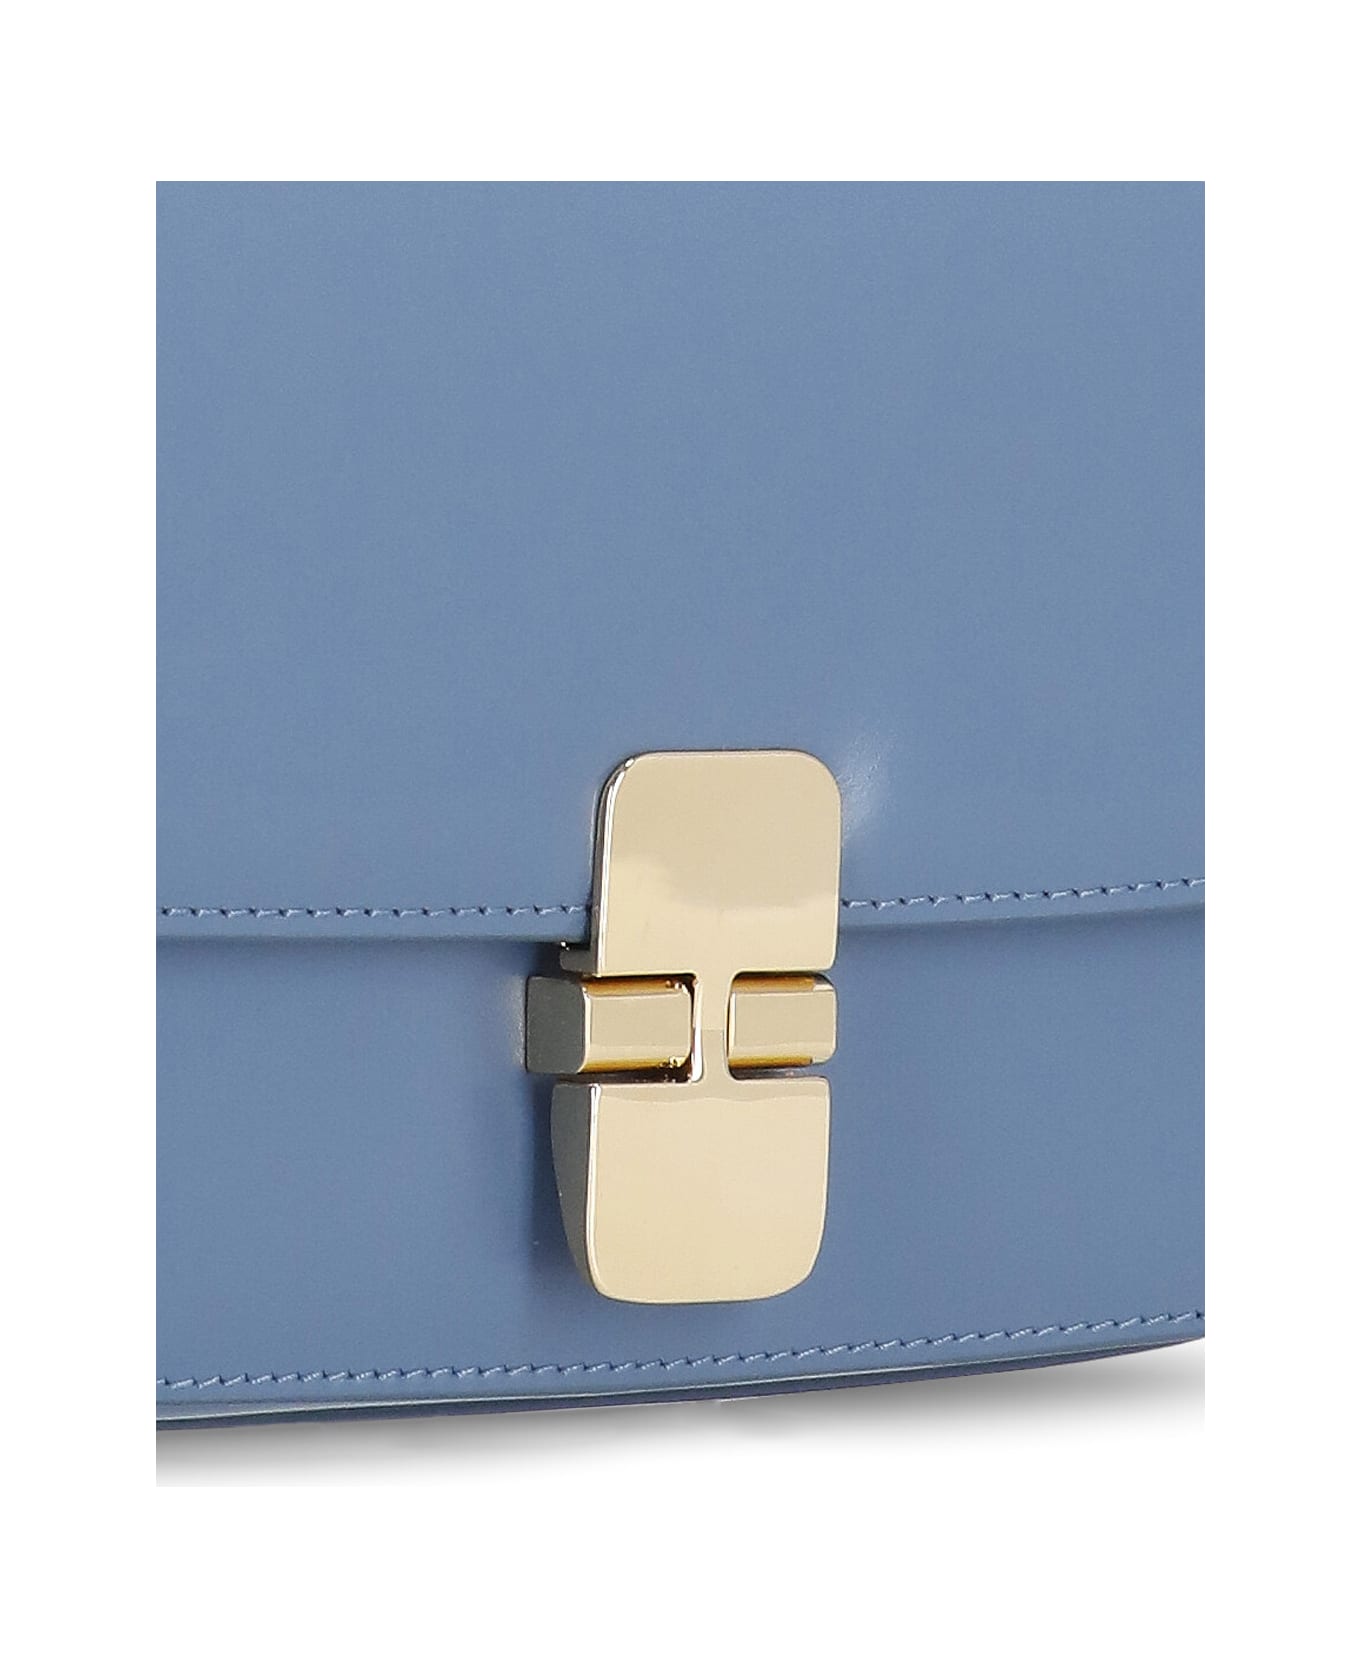 A.P.C. Grace Leather Clutch Bag - Light Blue ショルダーバッグ